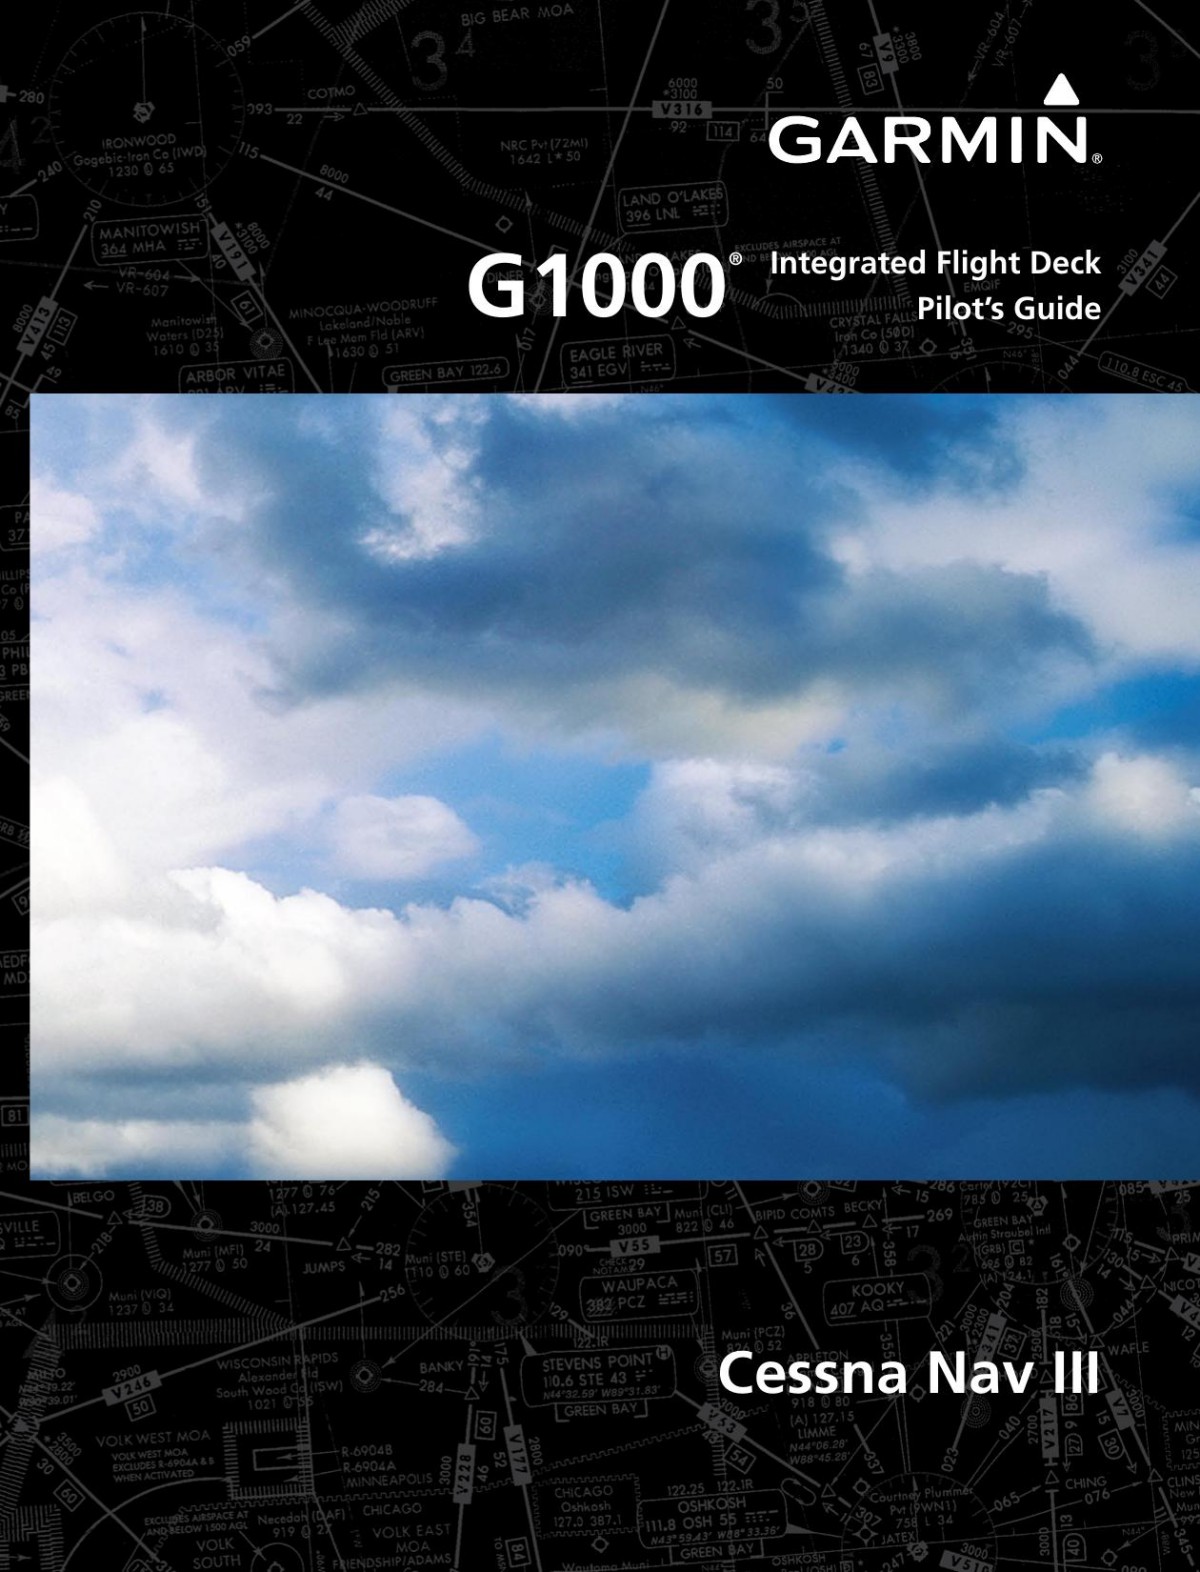 Garmin G1000 Guide Cessna Nav III